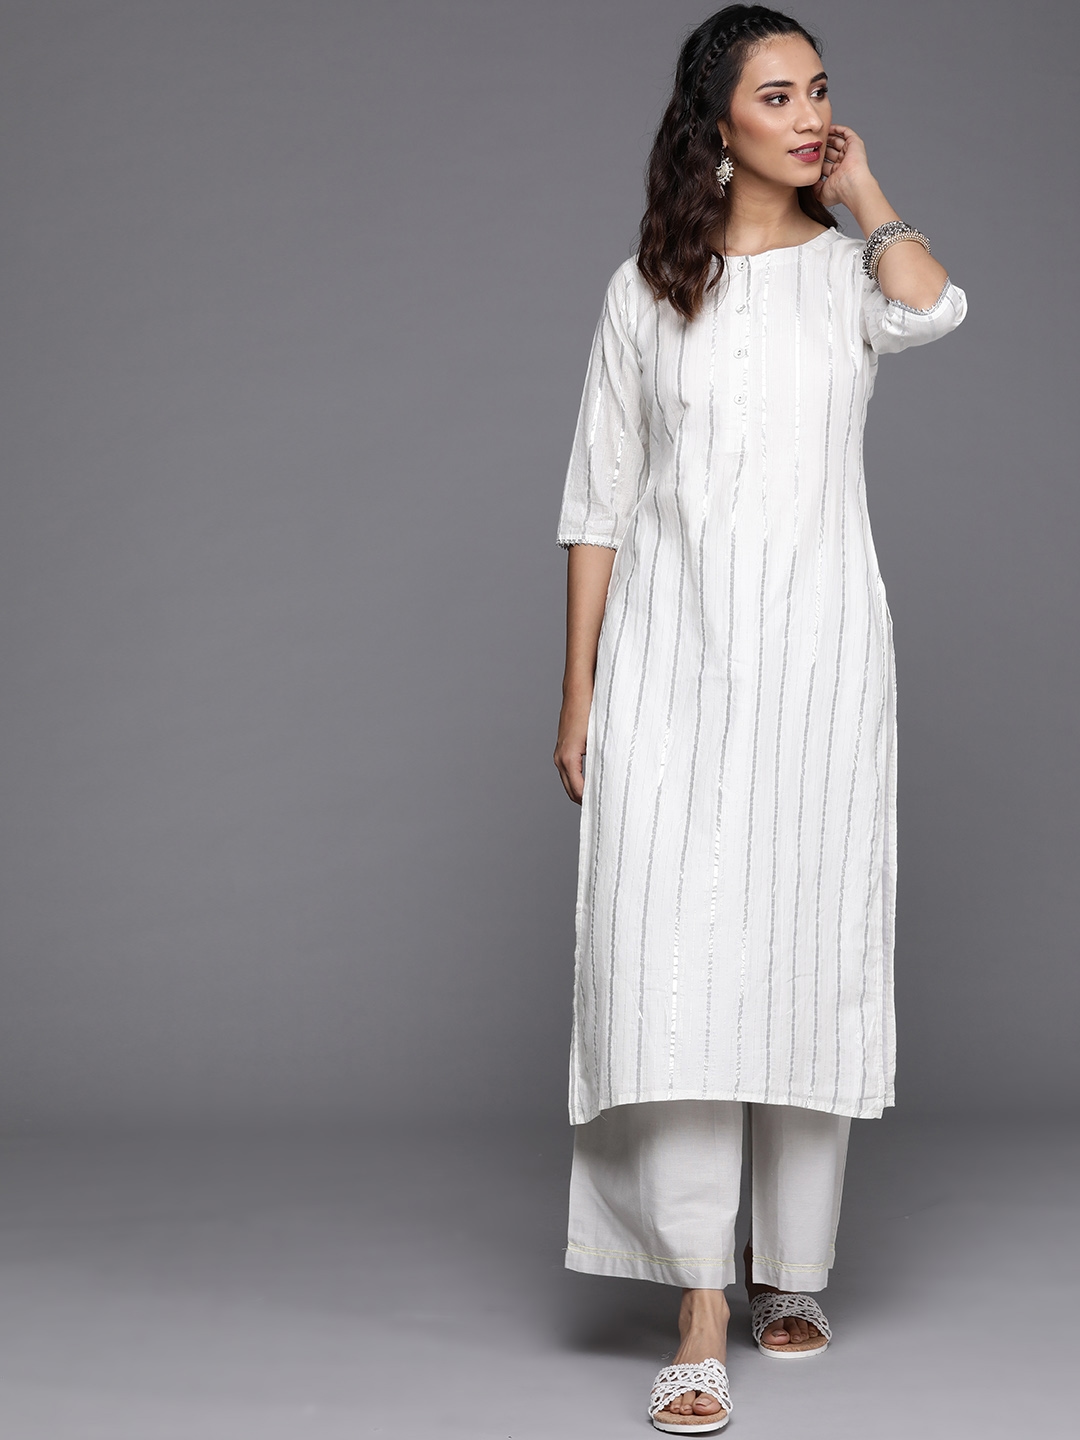 Buy Off White Kurtas & Kurtis for Women by Svrnaa Online | Ajio.com-saigonsouth.com.vn